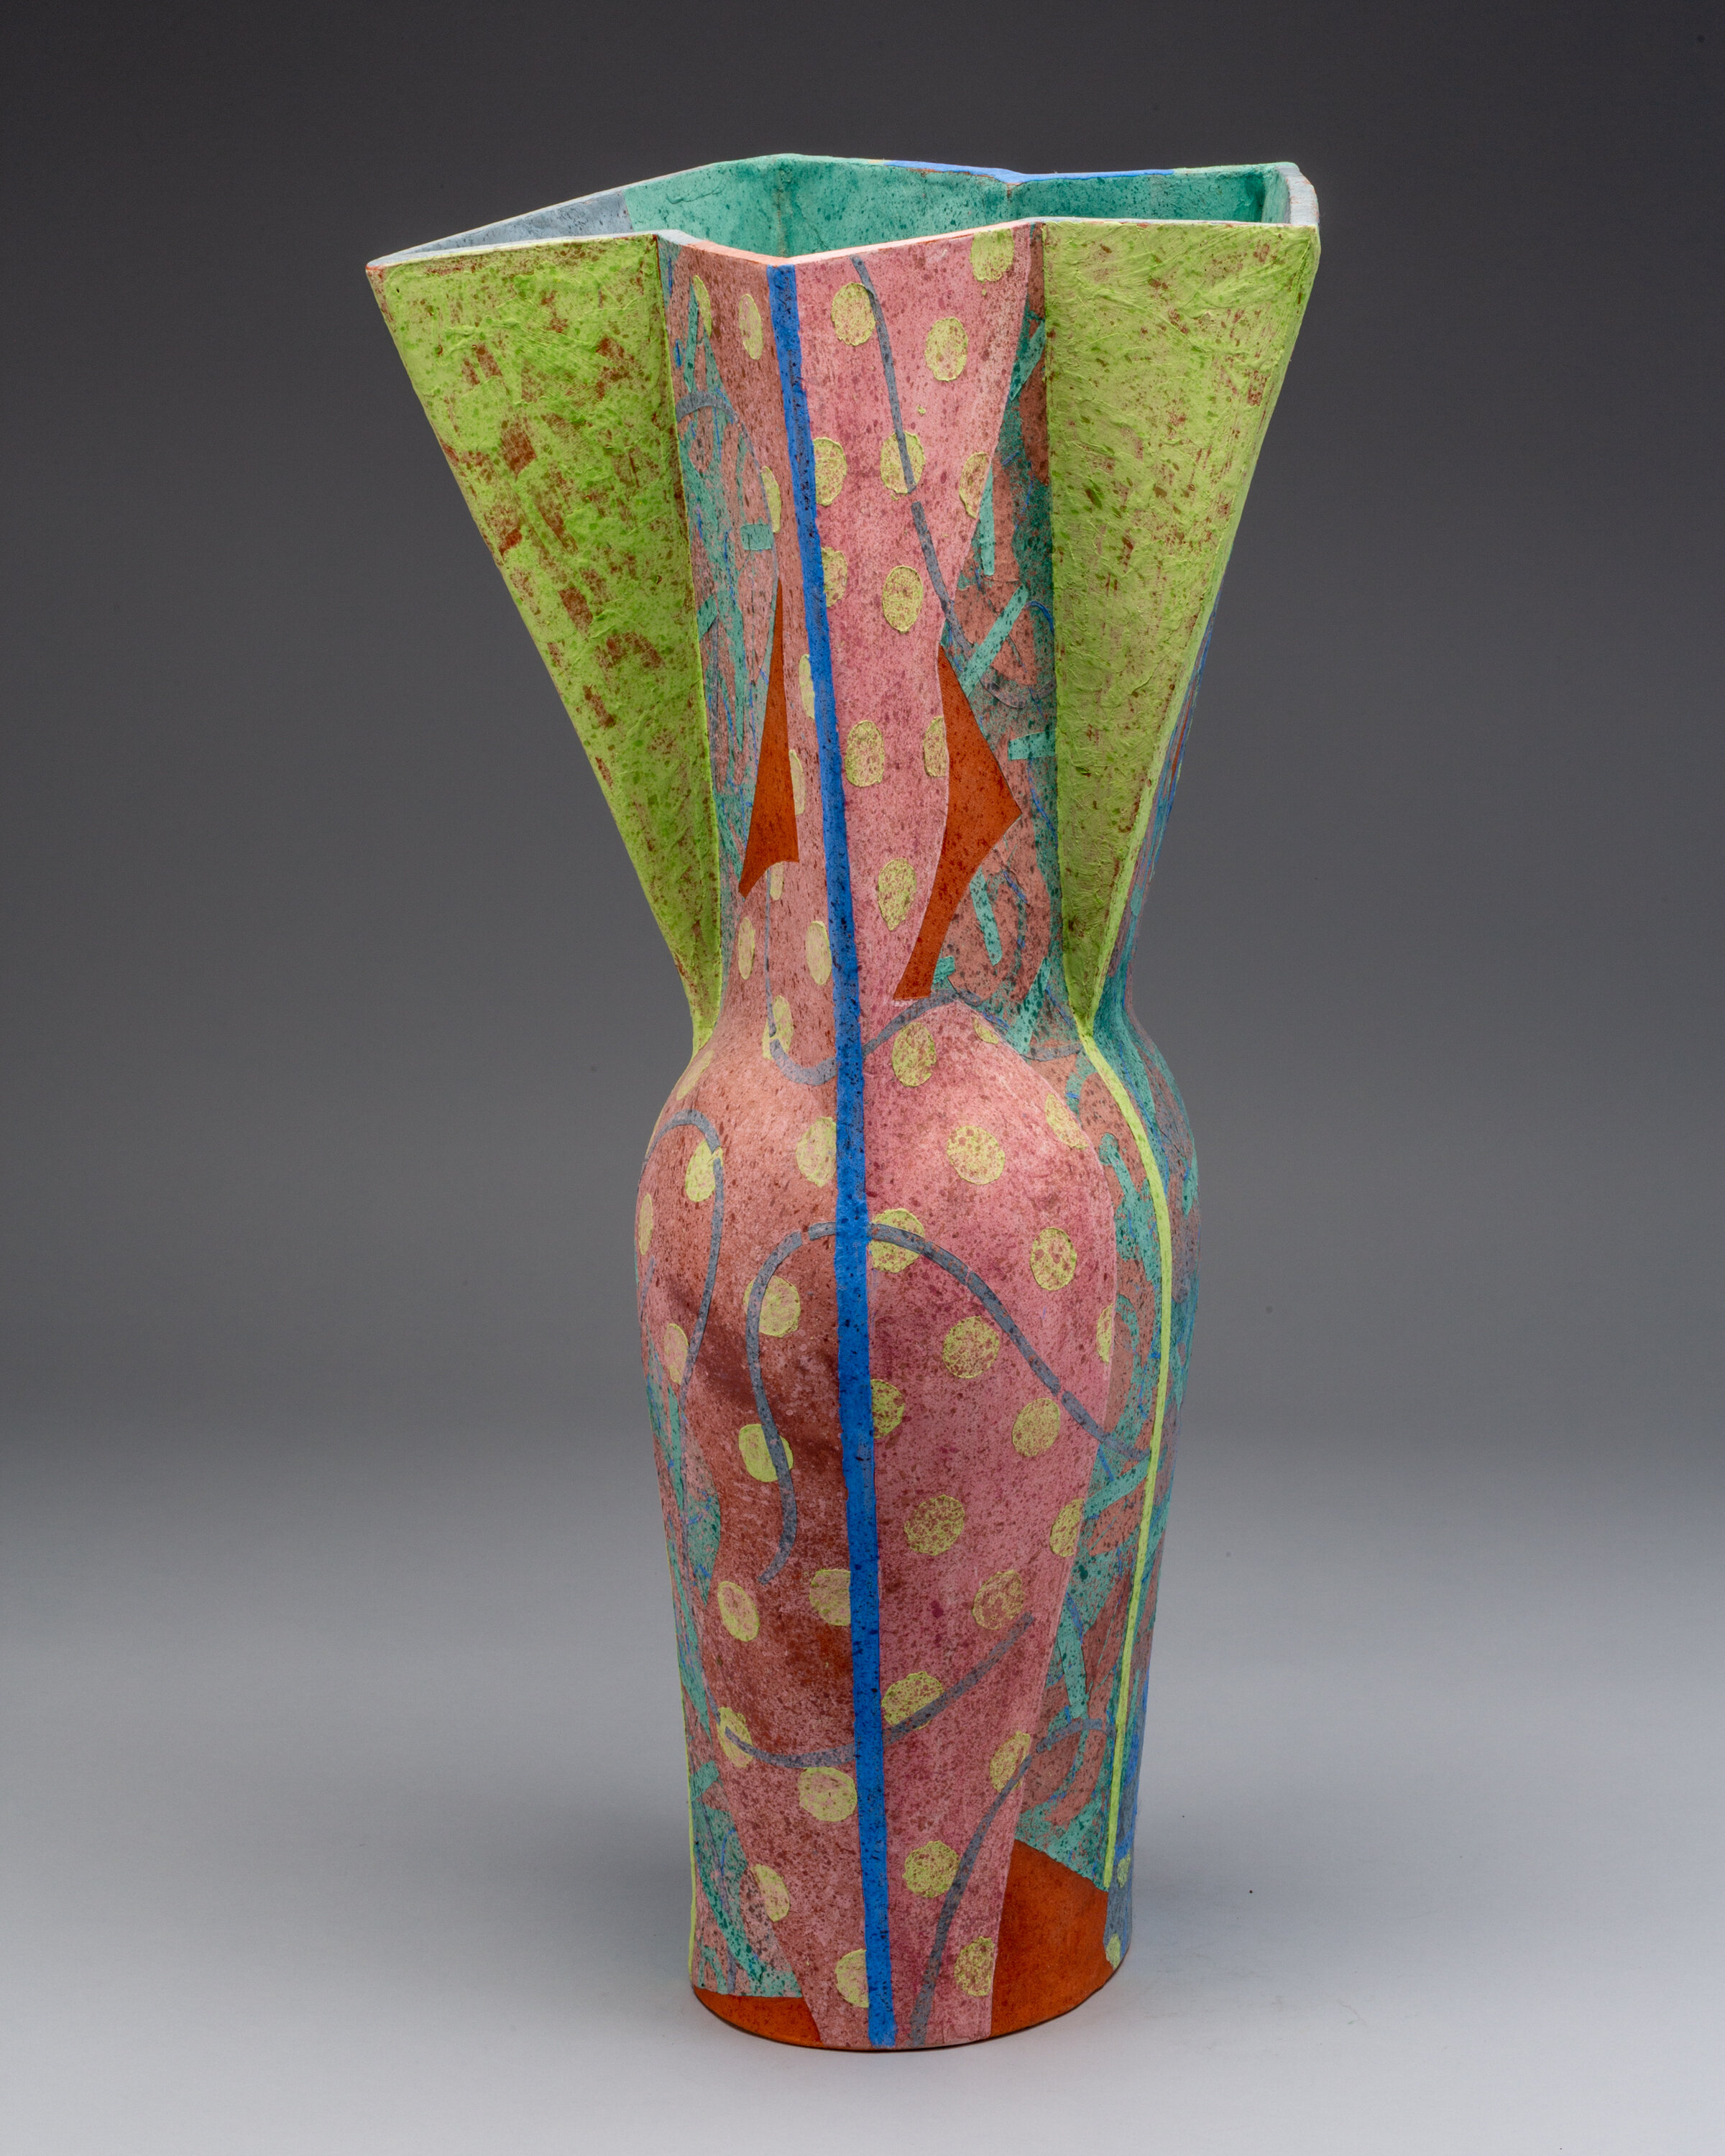  Andrea Gill (American, b. 1948), Tall Vase, 1991, earthenware, Promised Gift of E. John Bullard 